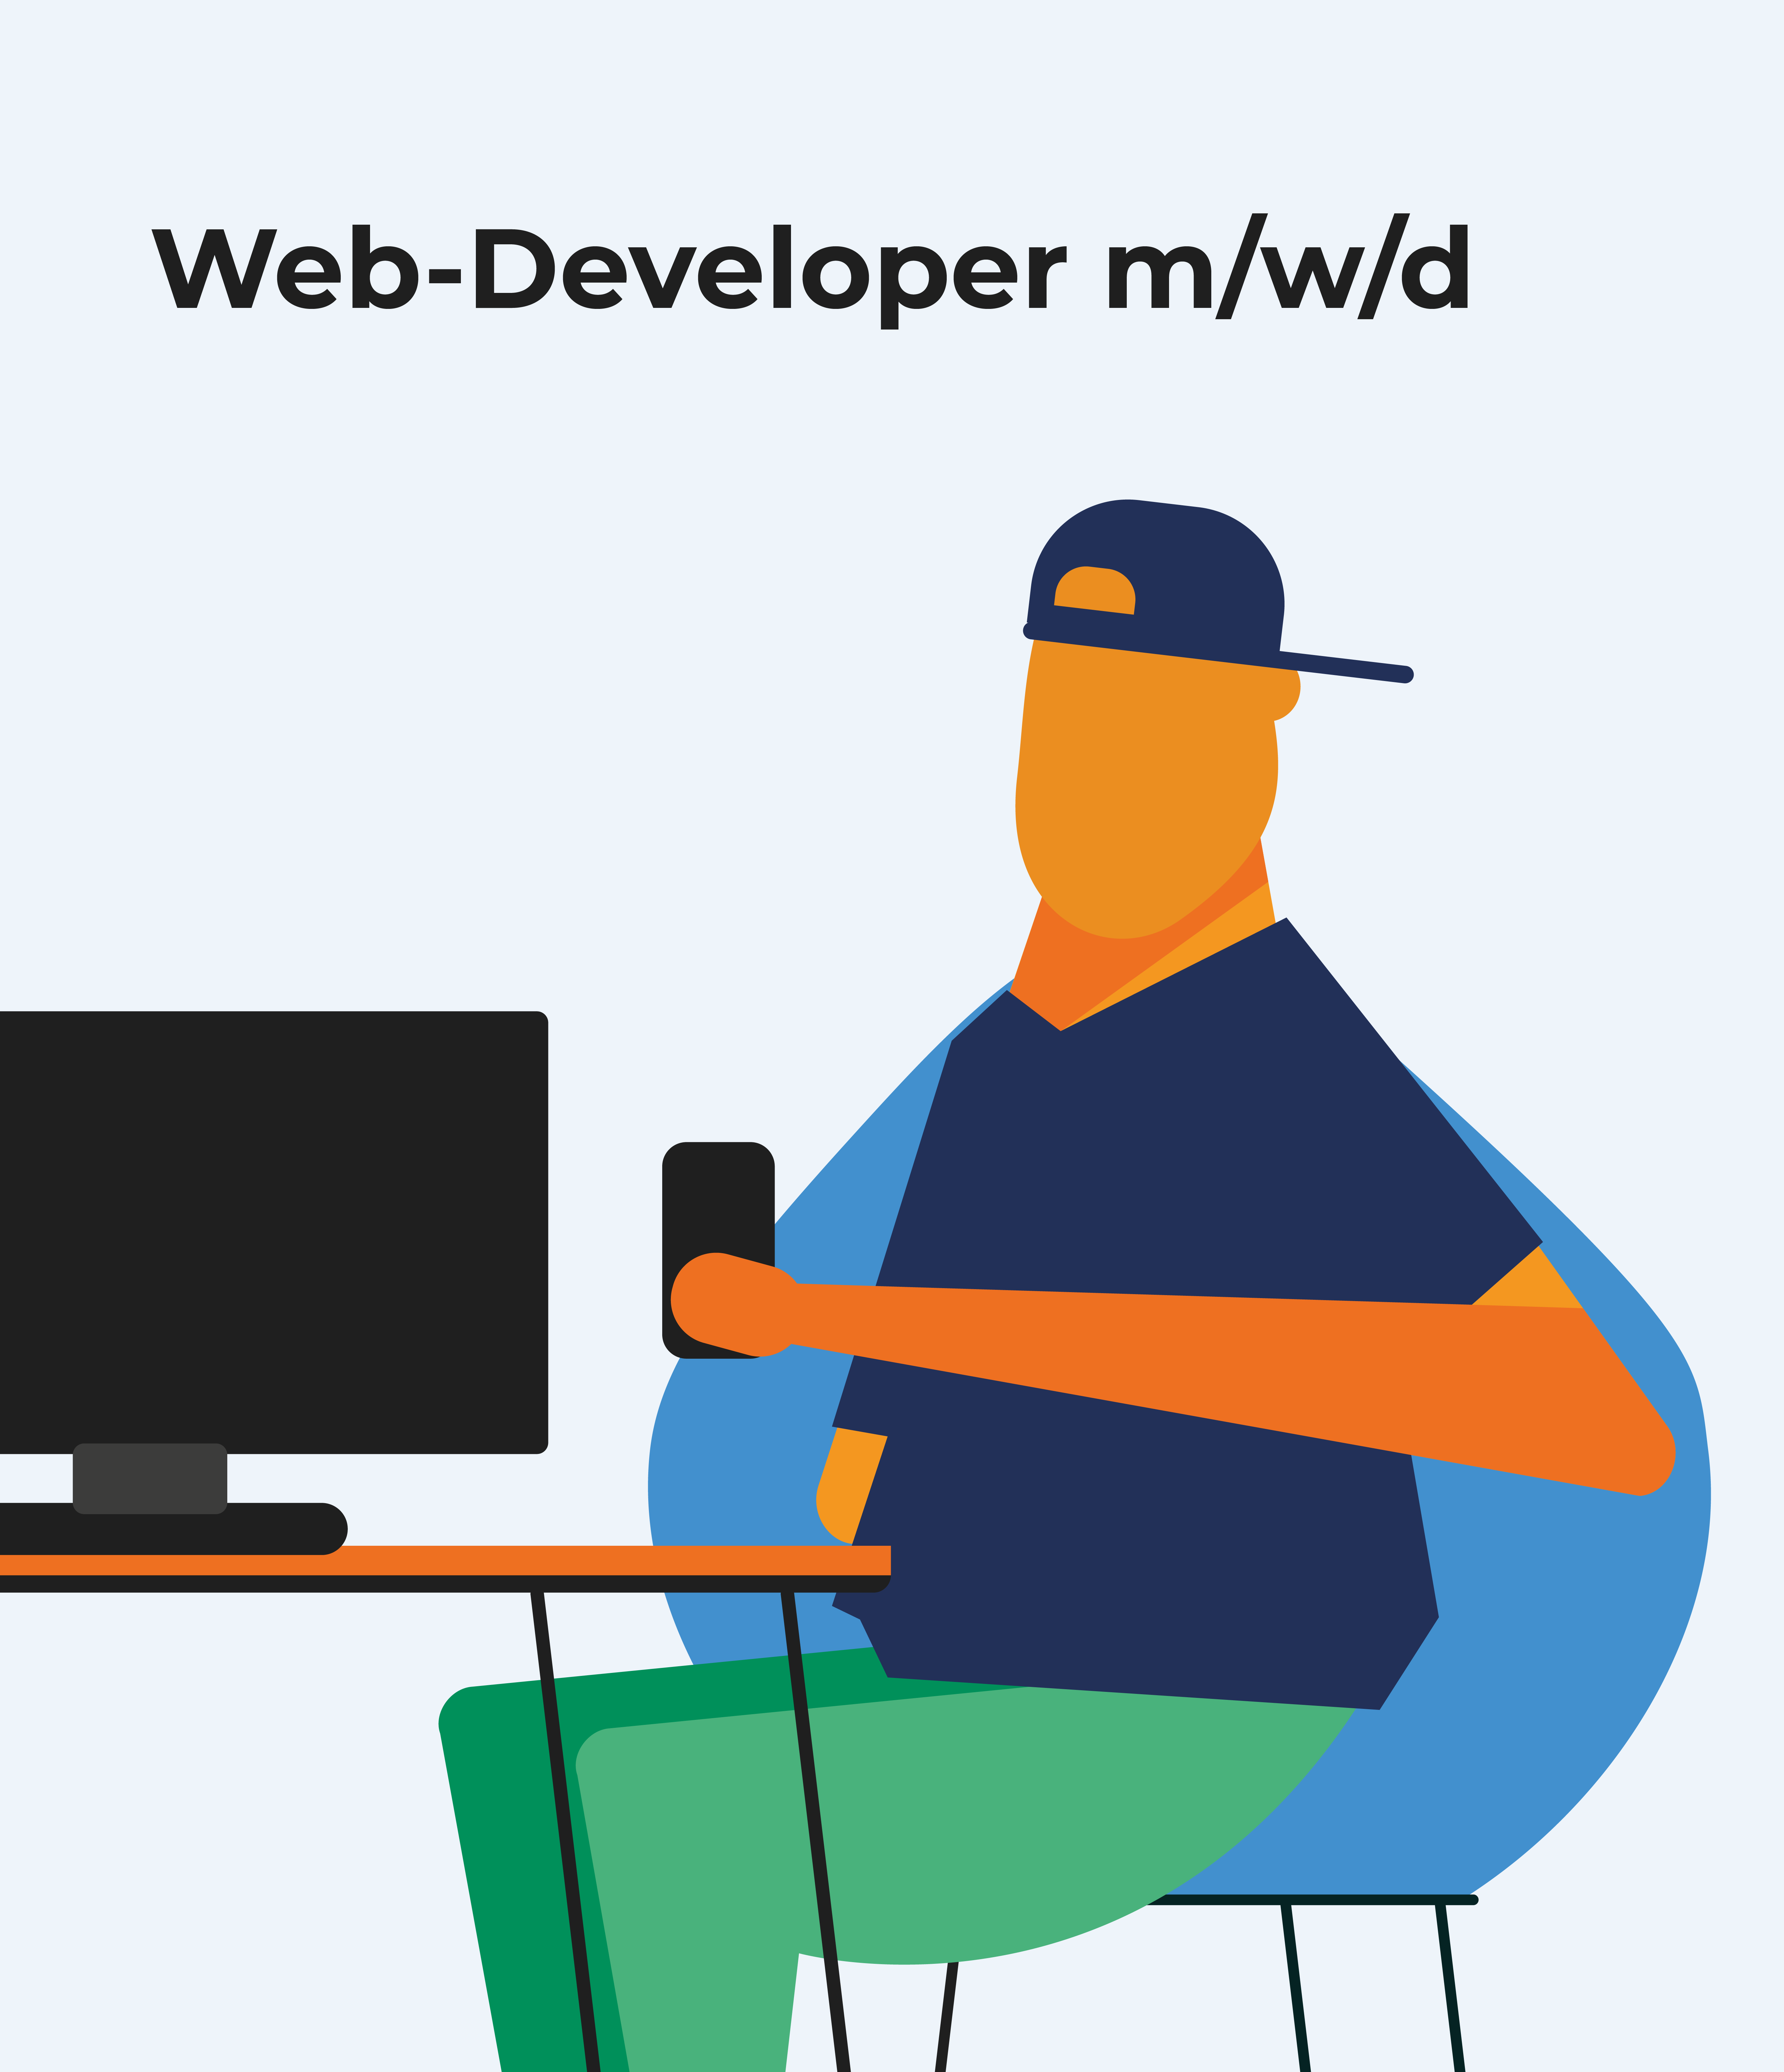 Web-Developer m/w/d